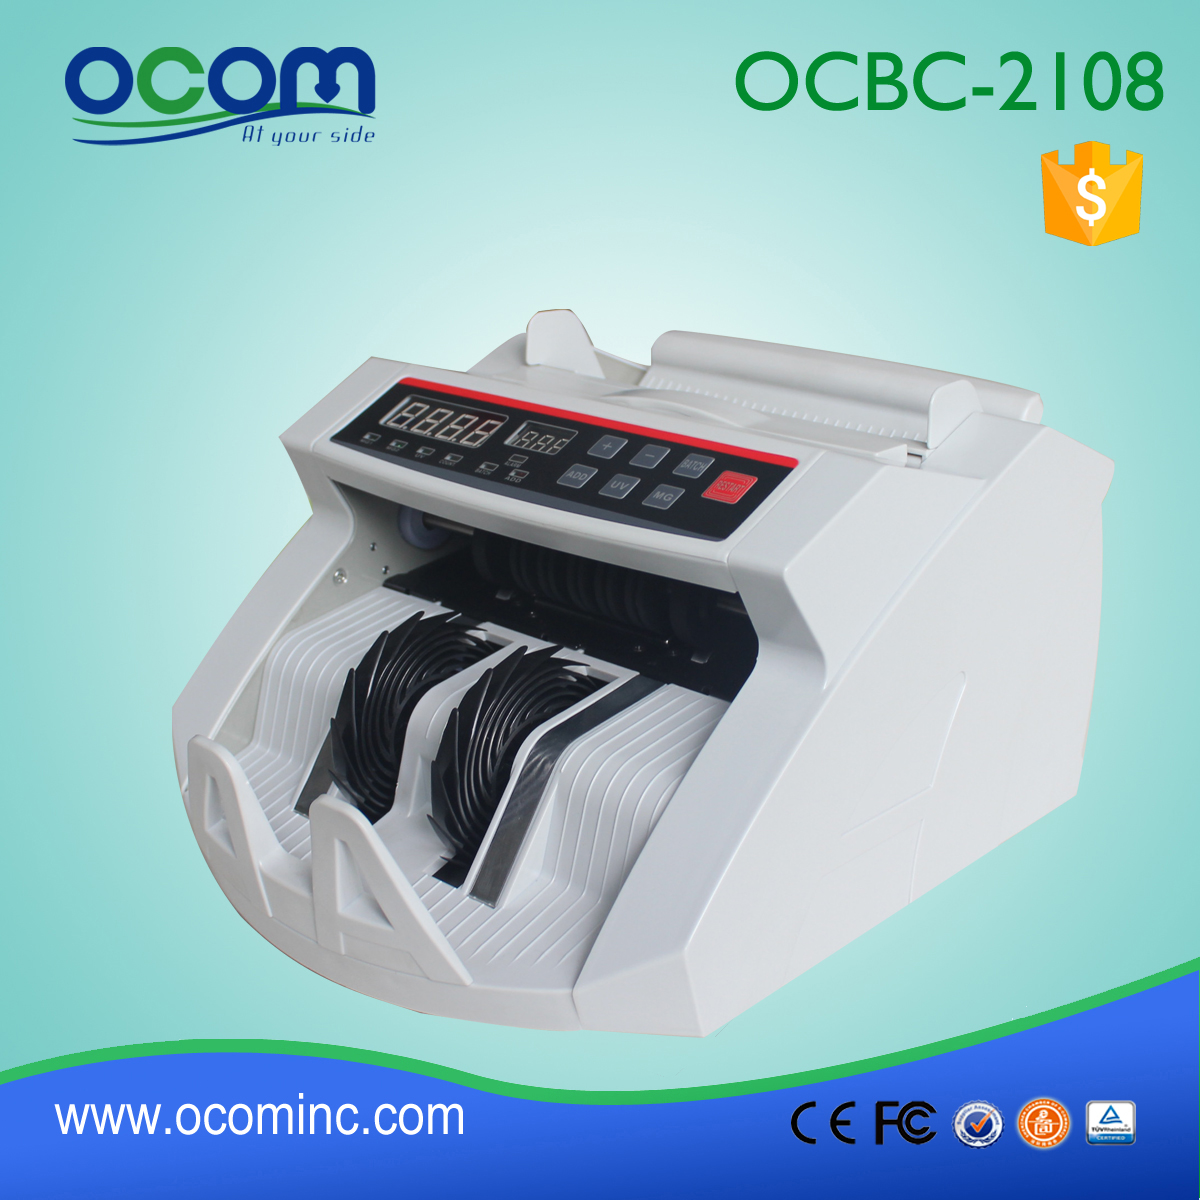 (OCBC-2108) - OCOM 2016 macchina contatore recente disegno di legge